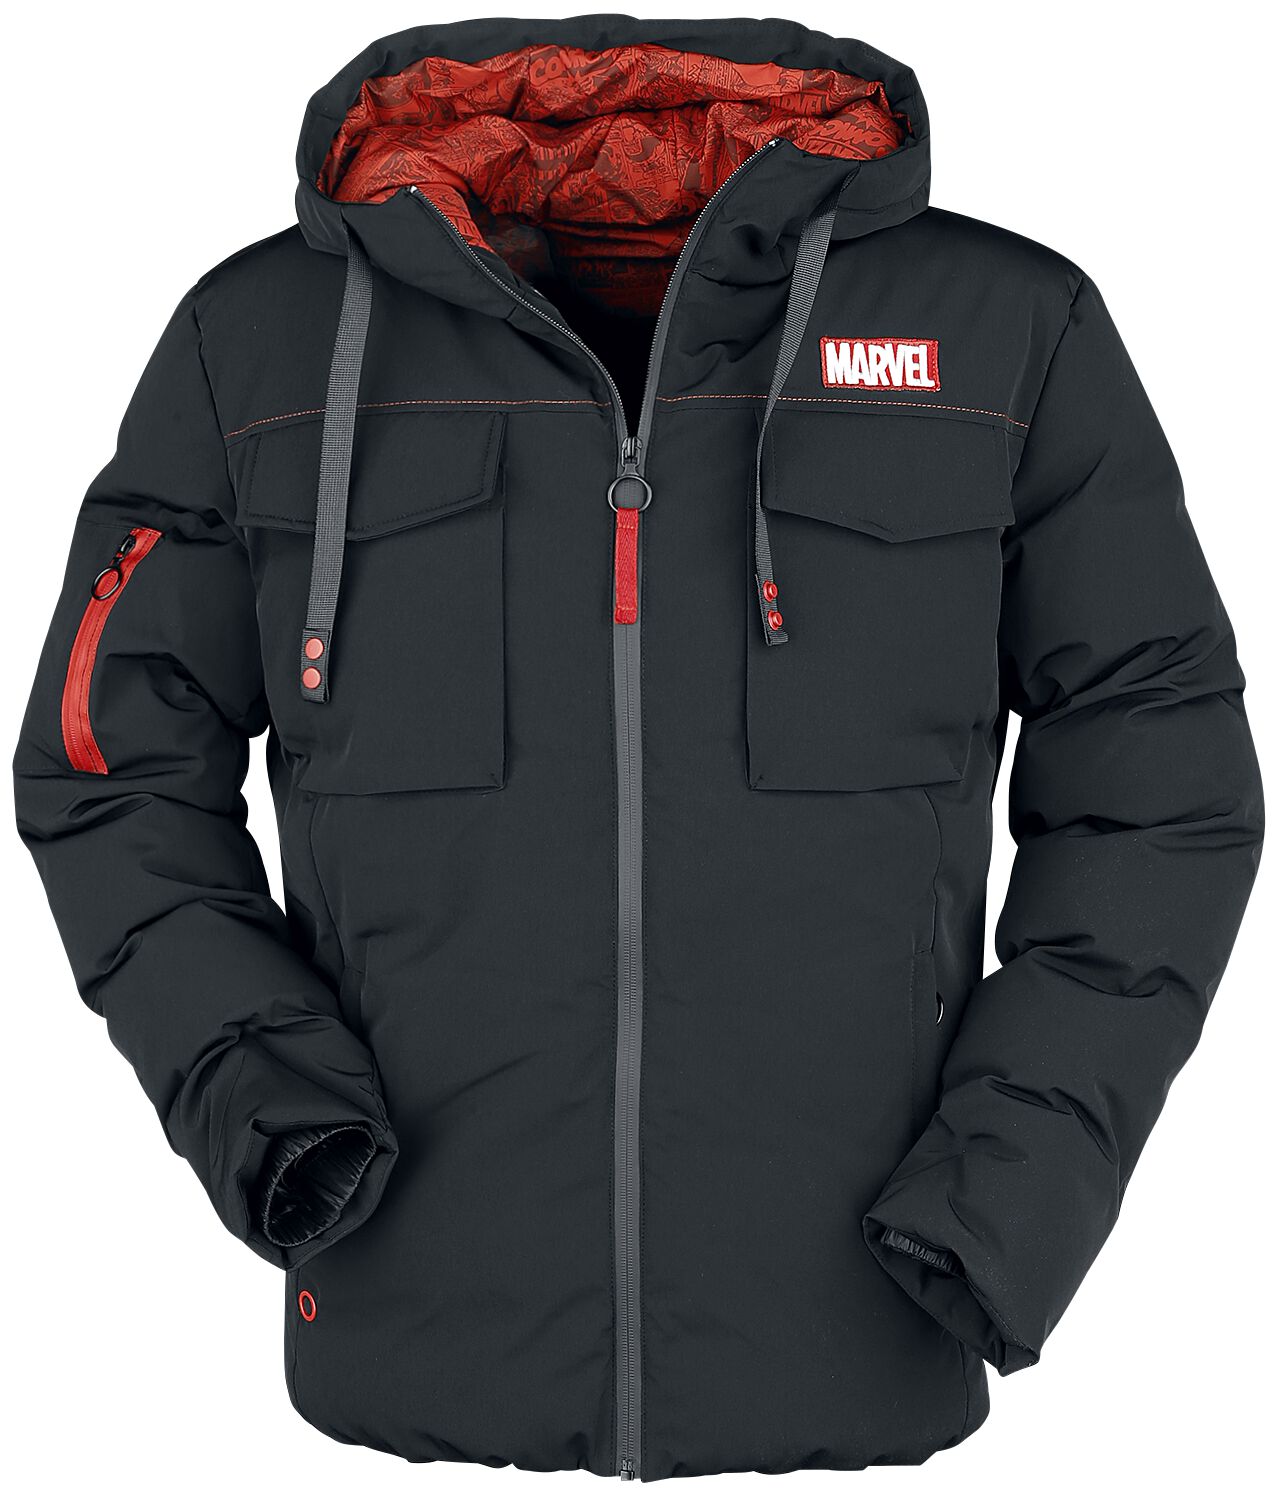 Marvel - Marvel Winterjacke - Marvel Logo - S bis XL - für Männer - Größe S - schwarz  - EMP exklusives Merchandise! von Marvel